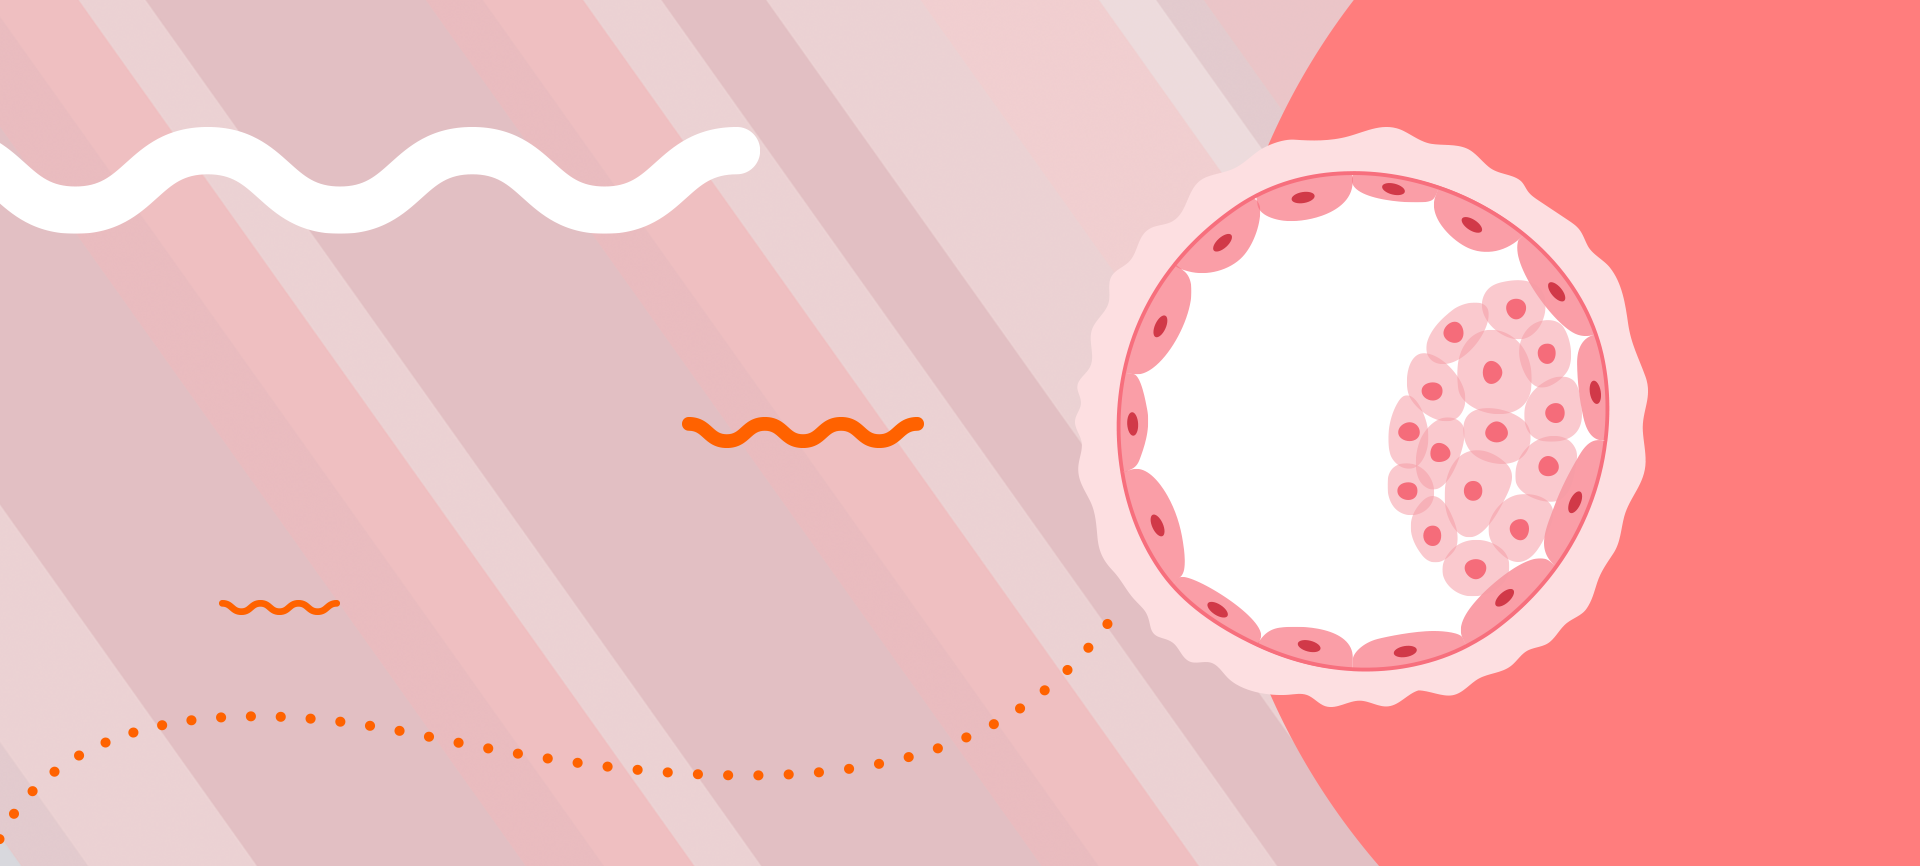 Receptividade endometrial: o que é e qual sua função na fertilidade?